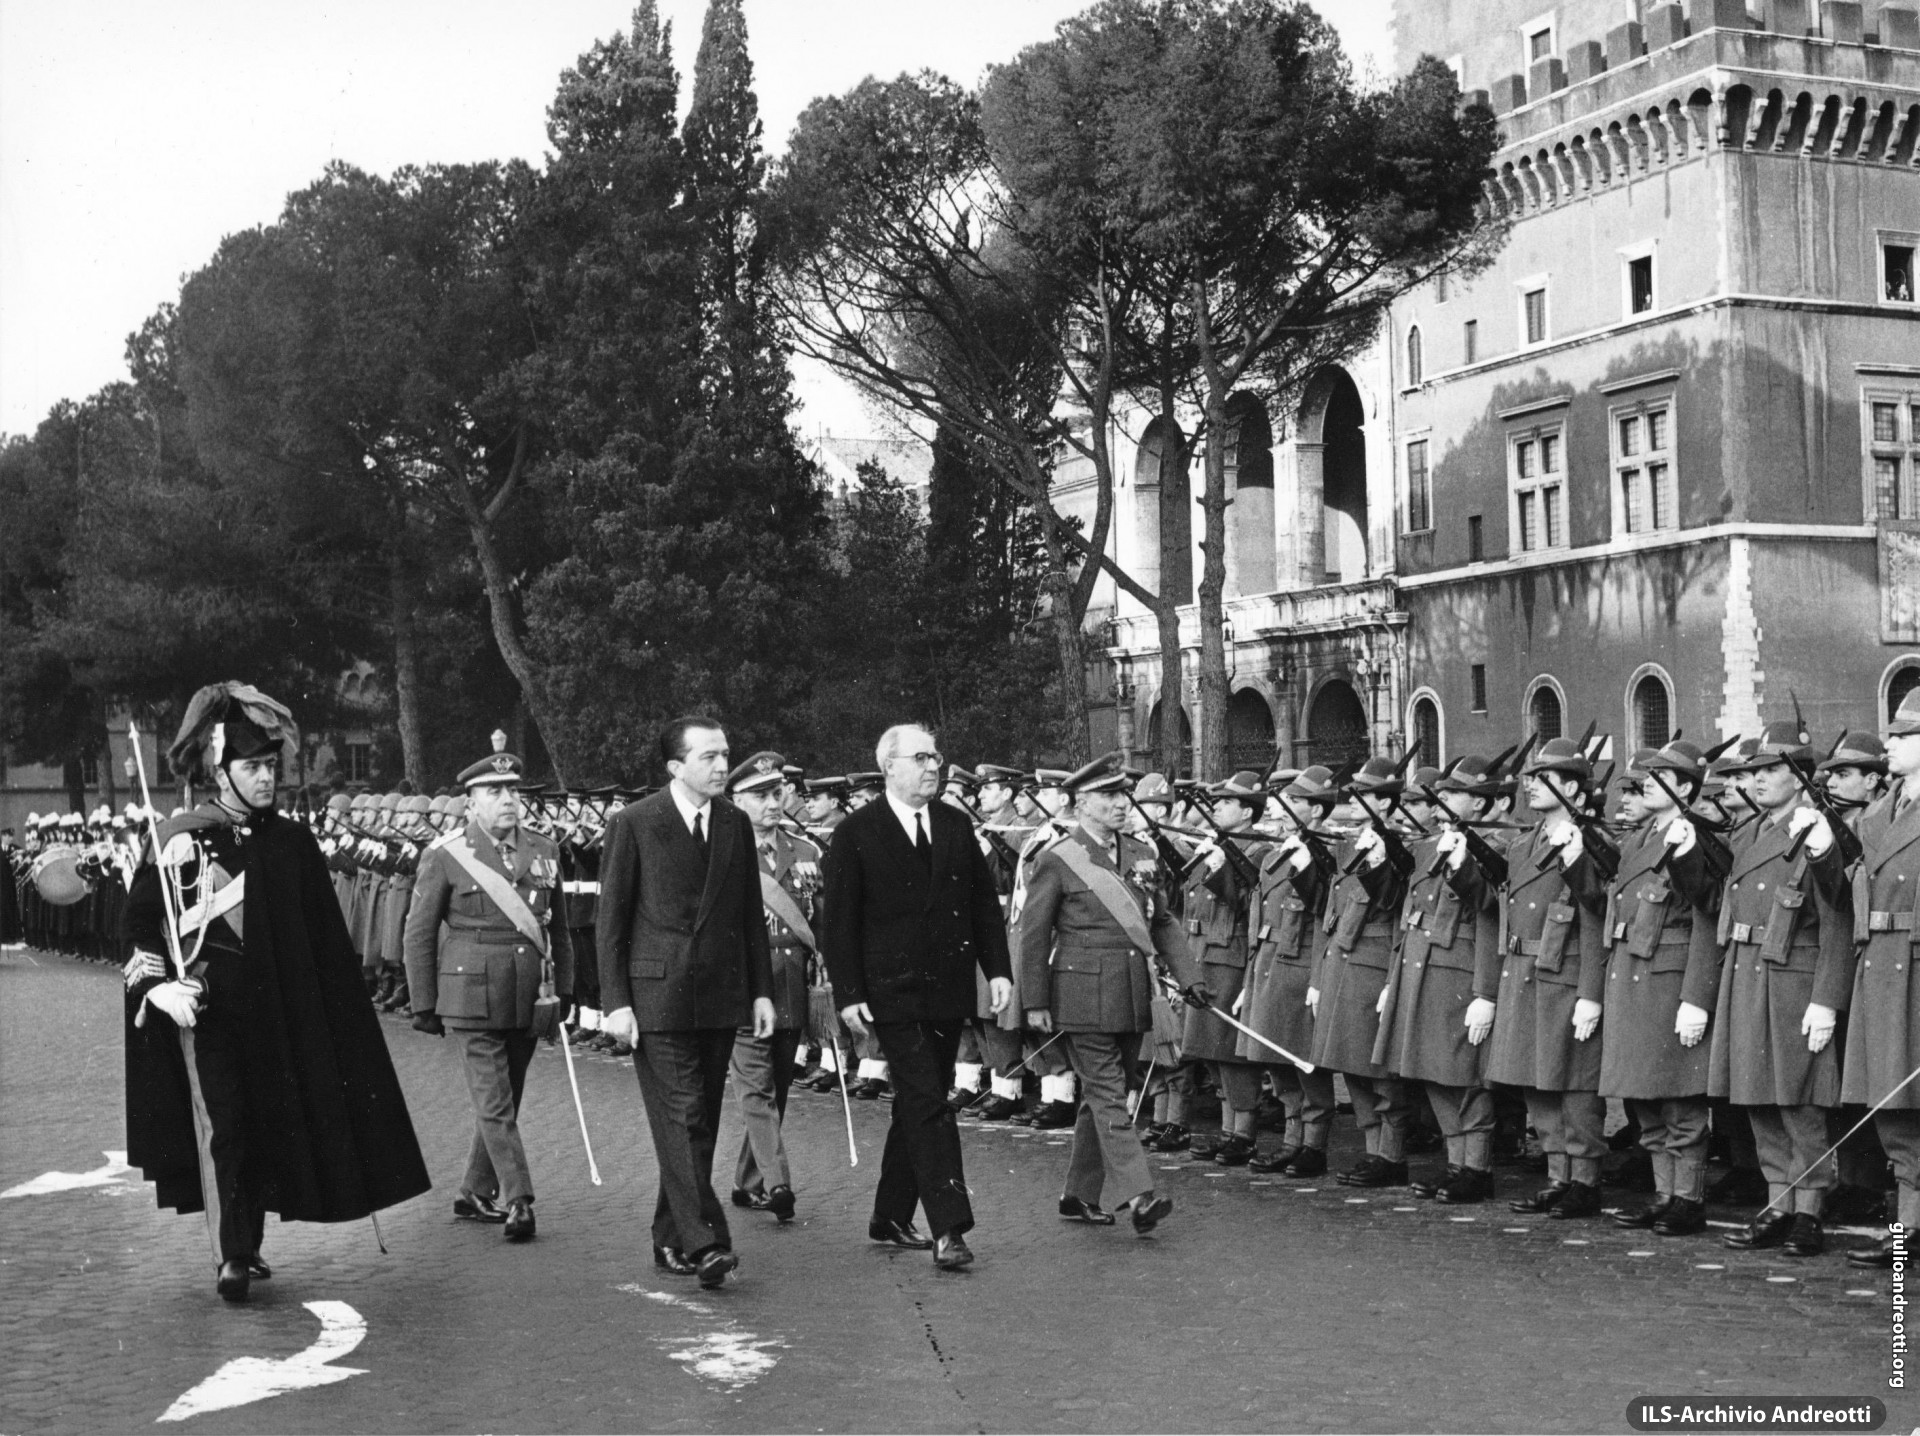 Piazza Venezia, 30 dicembre 1964. Il Ministro della Difesa Andreotti accompagna il Presidente della Repubblica, Saragat, durante la cerimonia di omaggio al Milite Ignoto.